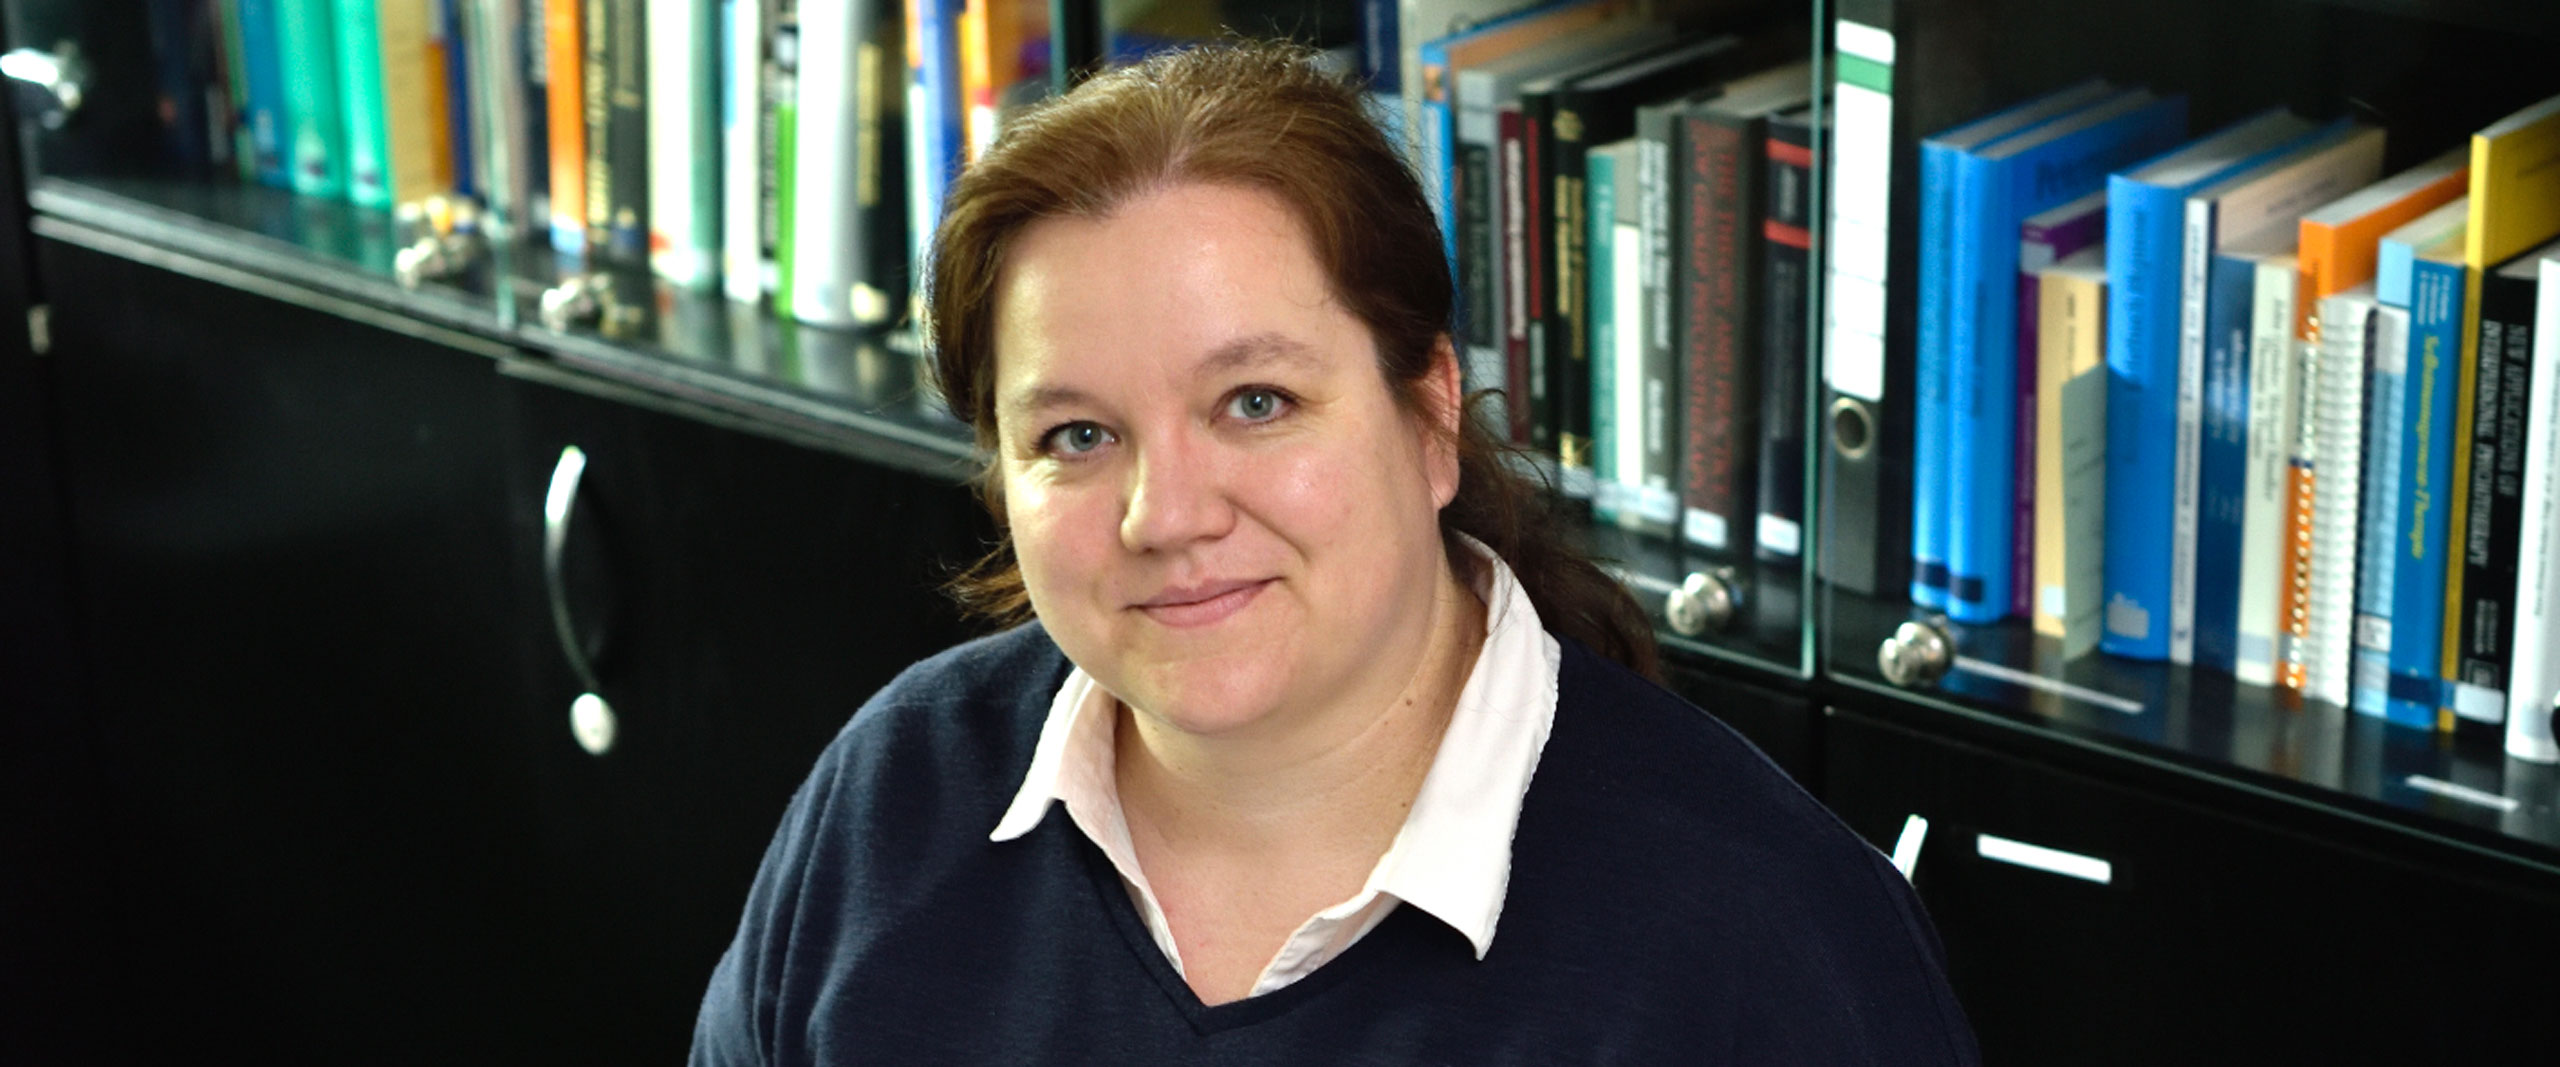 Prof. Dr. Nicole Ernstmann